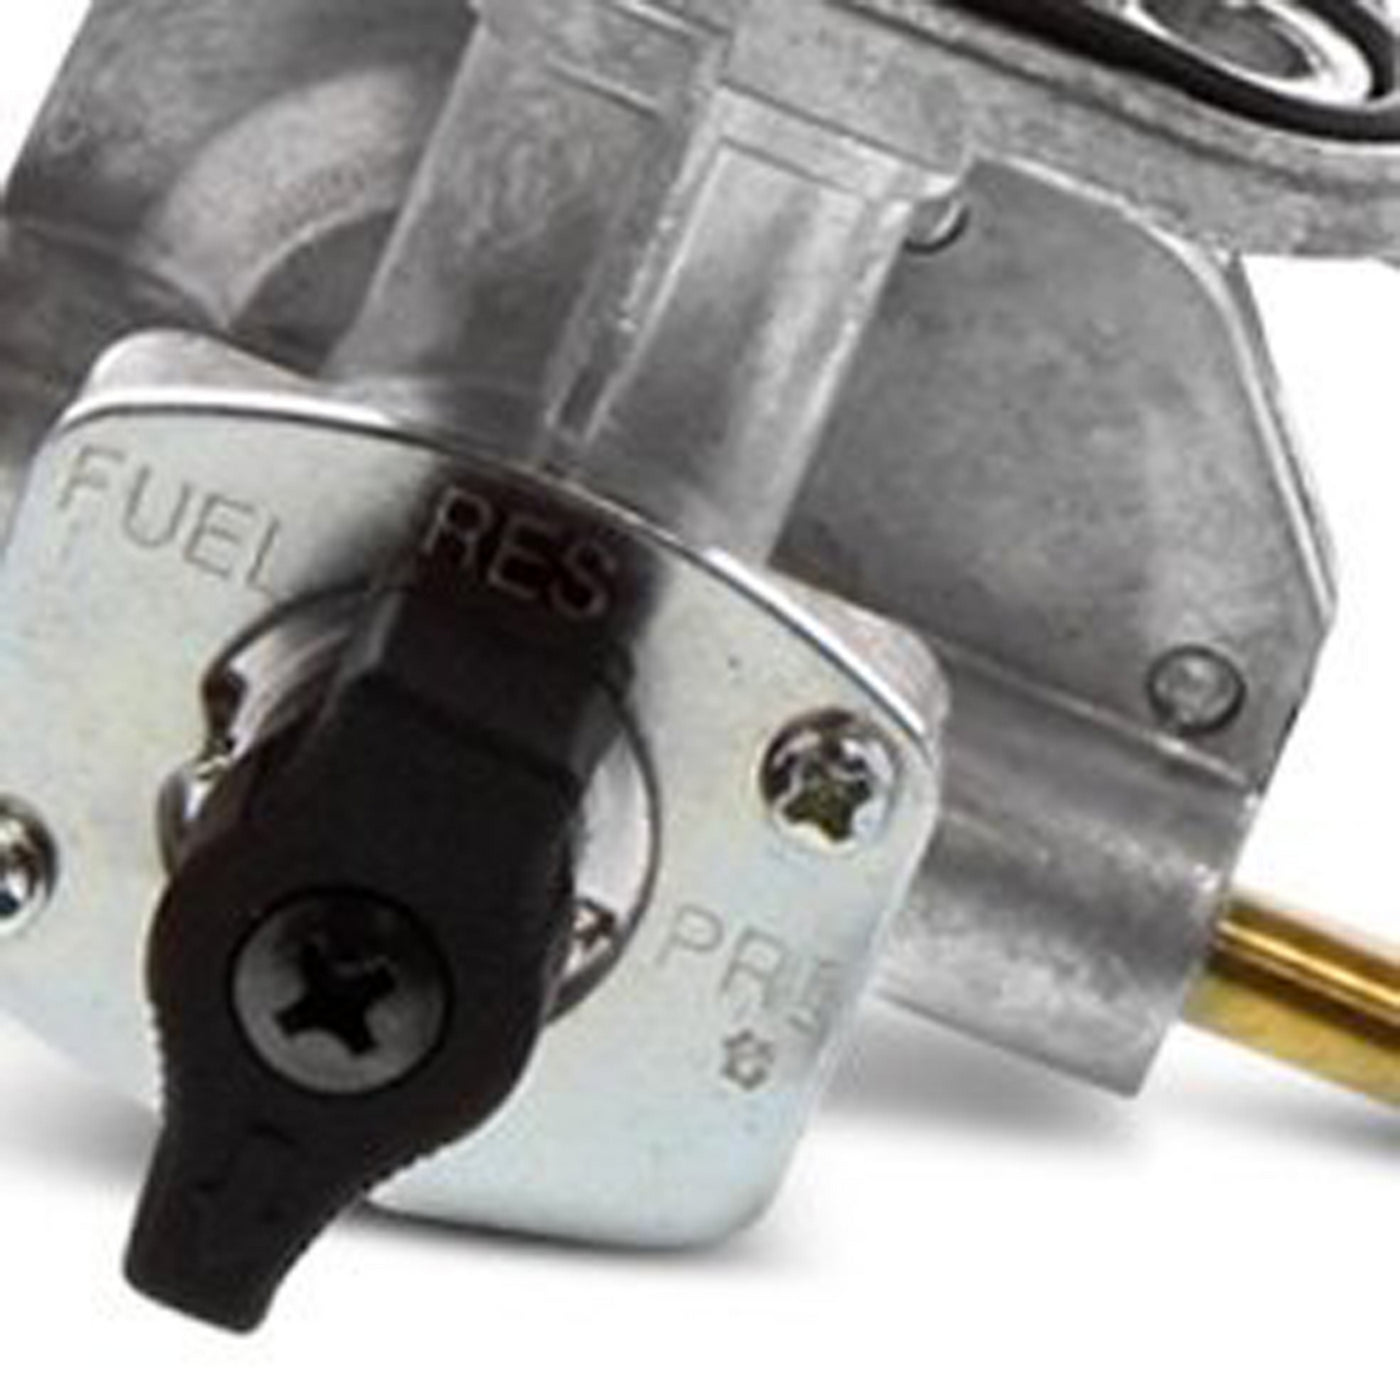 Fuel Star FS101-0140 Fuel Valve Kit #FS101-0140